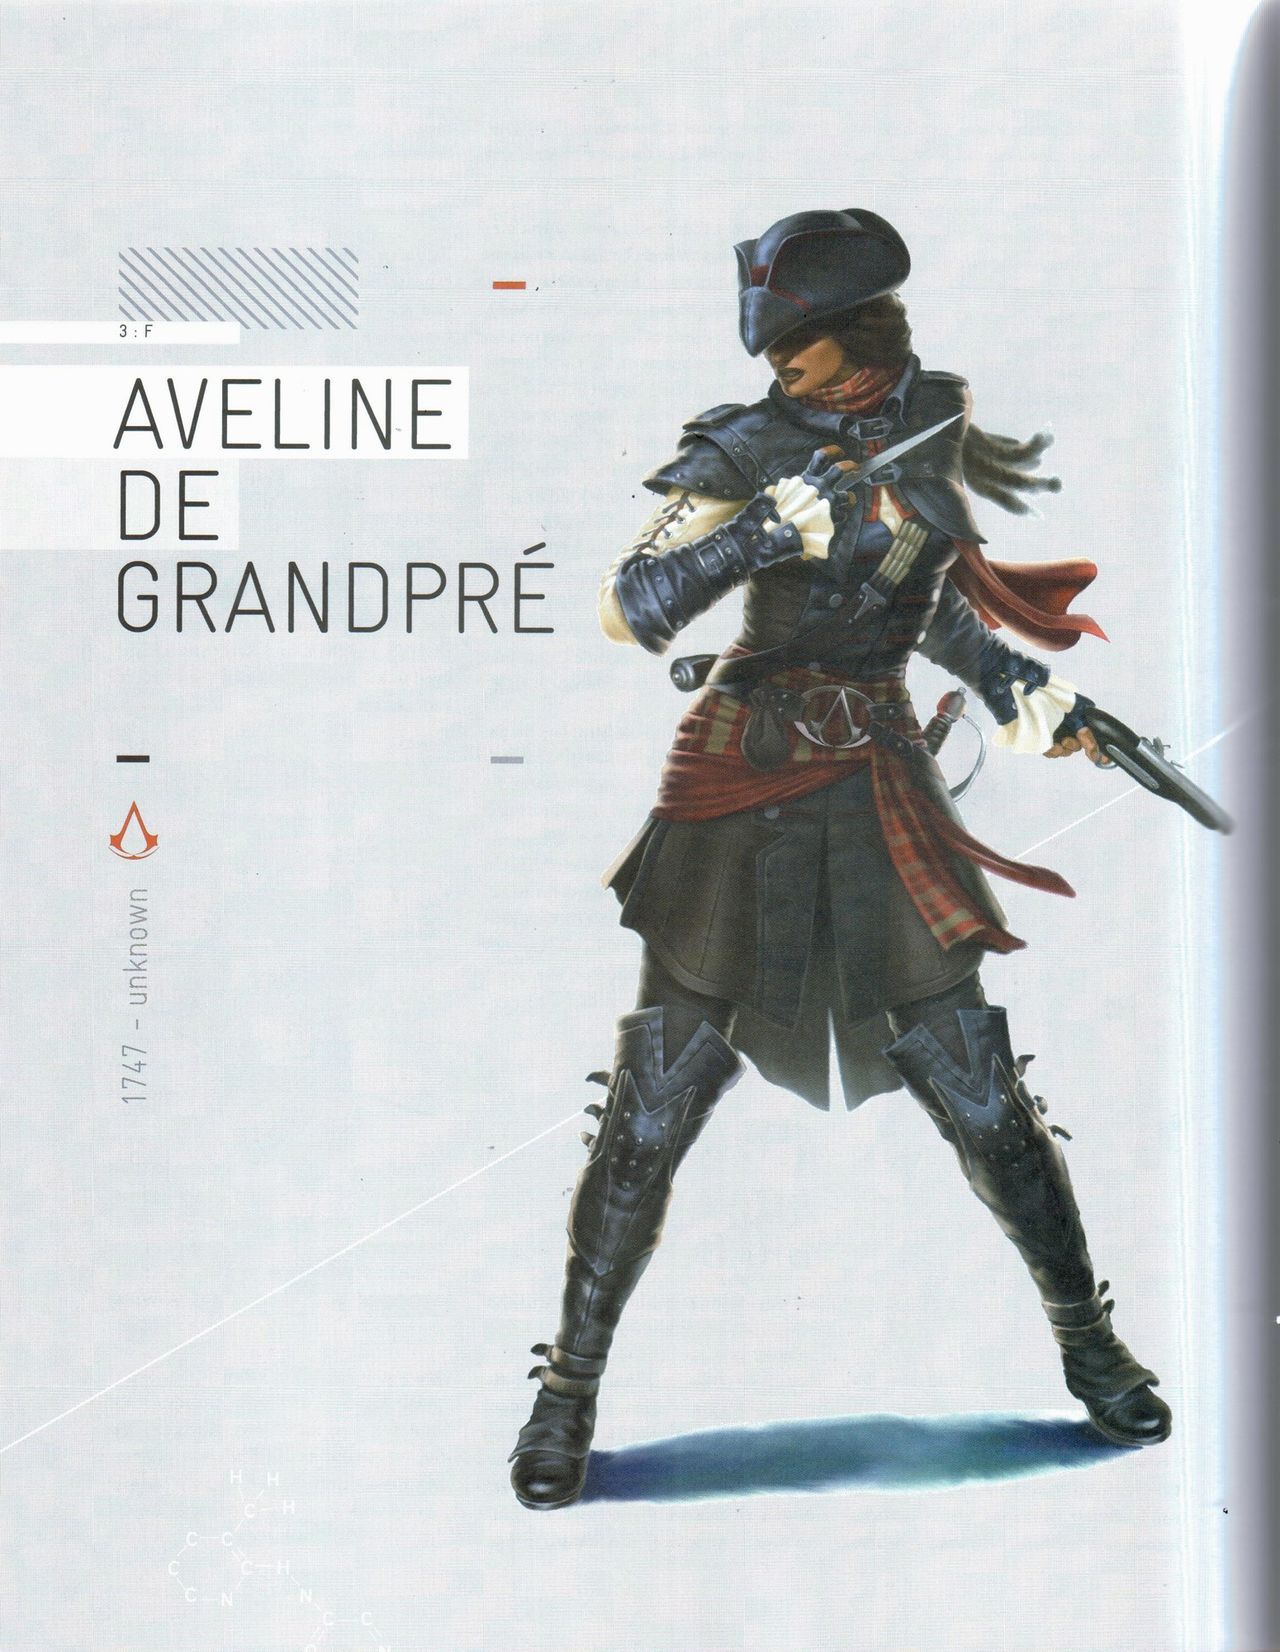 Assassin's Creed Encyclopedia 2.0 309